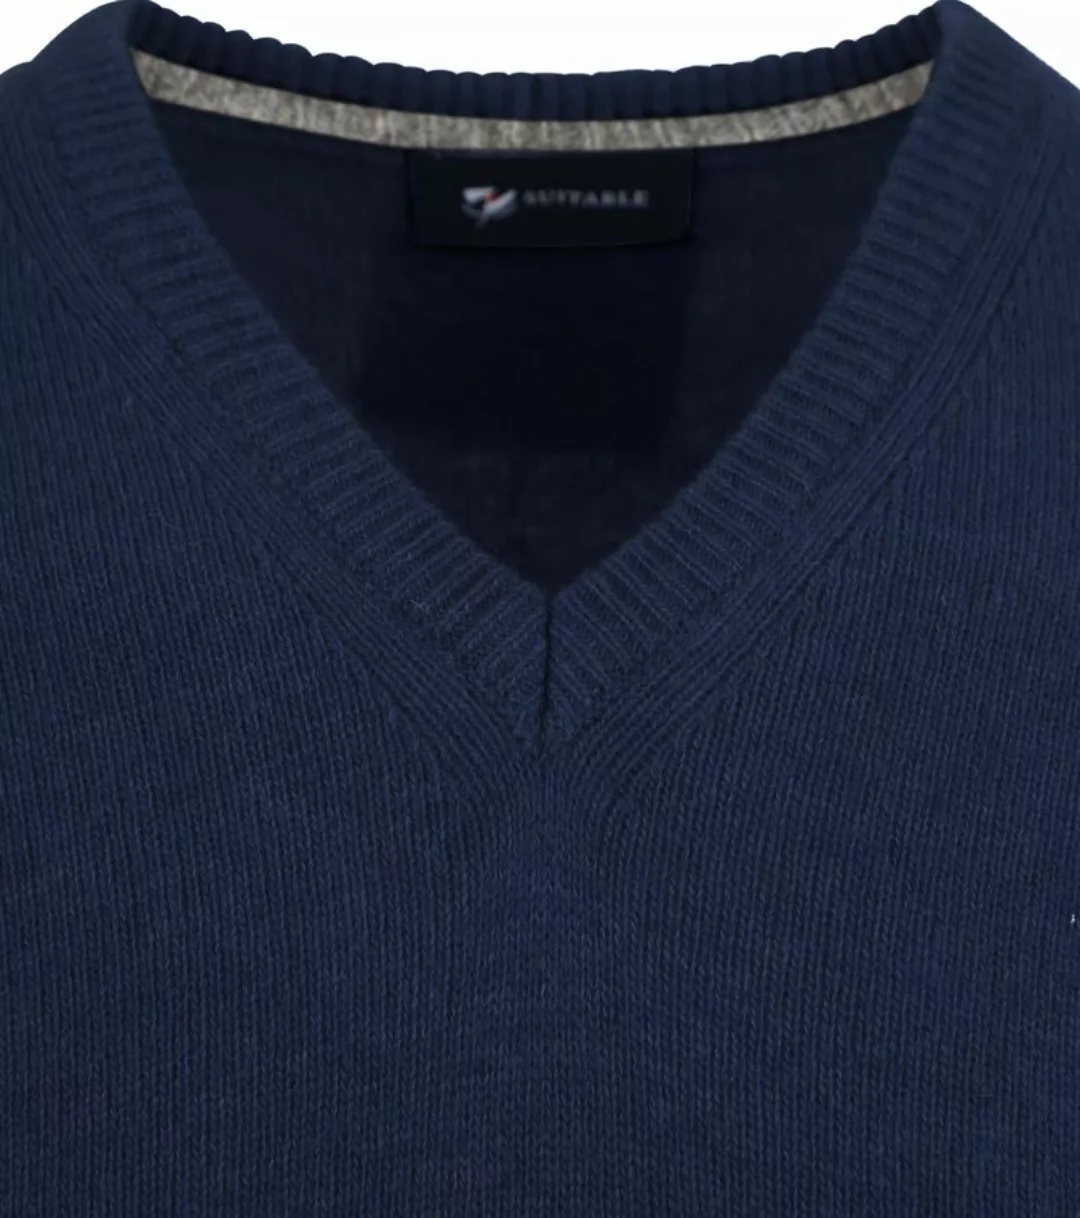 Suitable Lammwolle Pullover V-Ausschnitt Navy - Größe XL günstig online kaufen